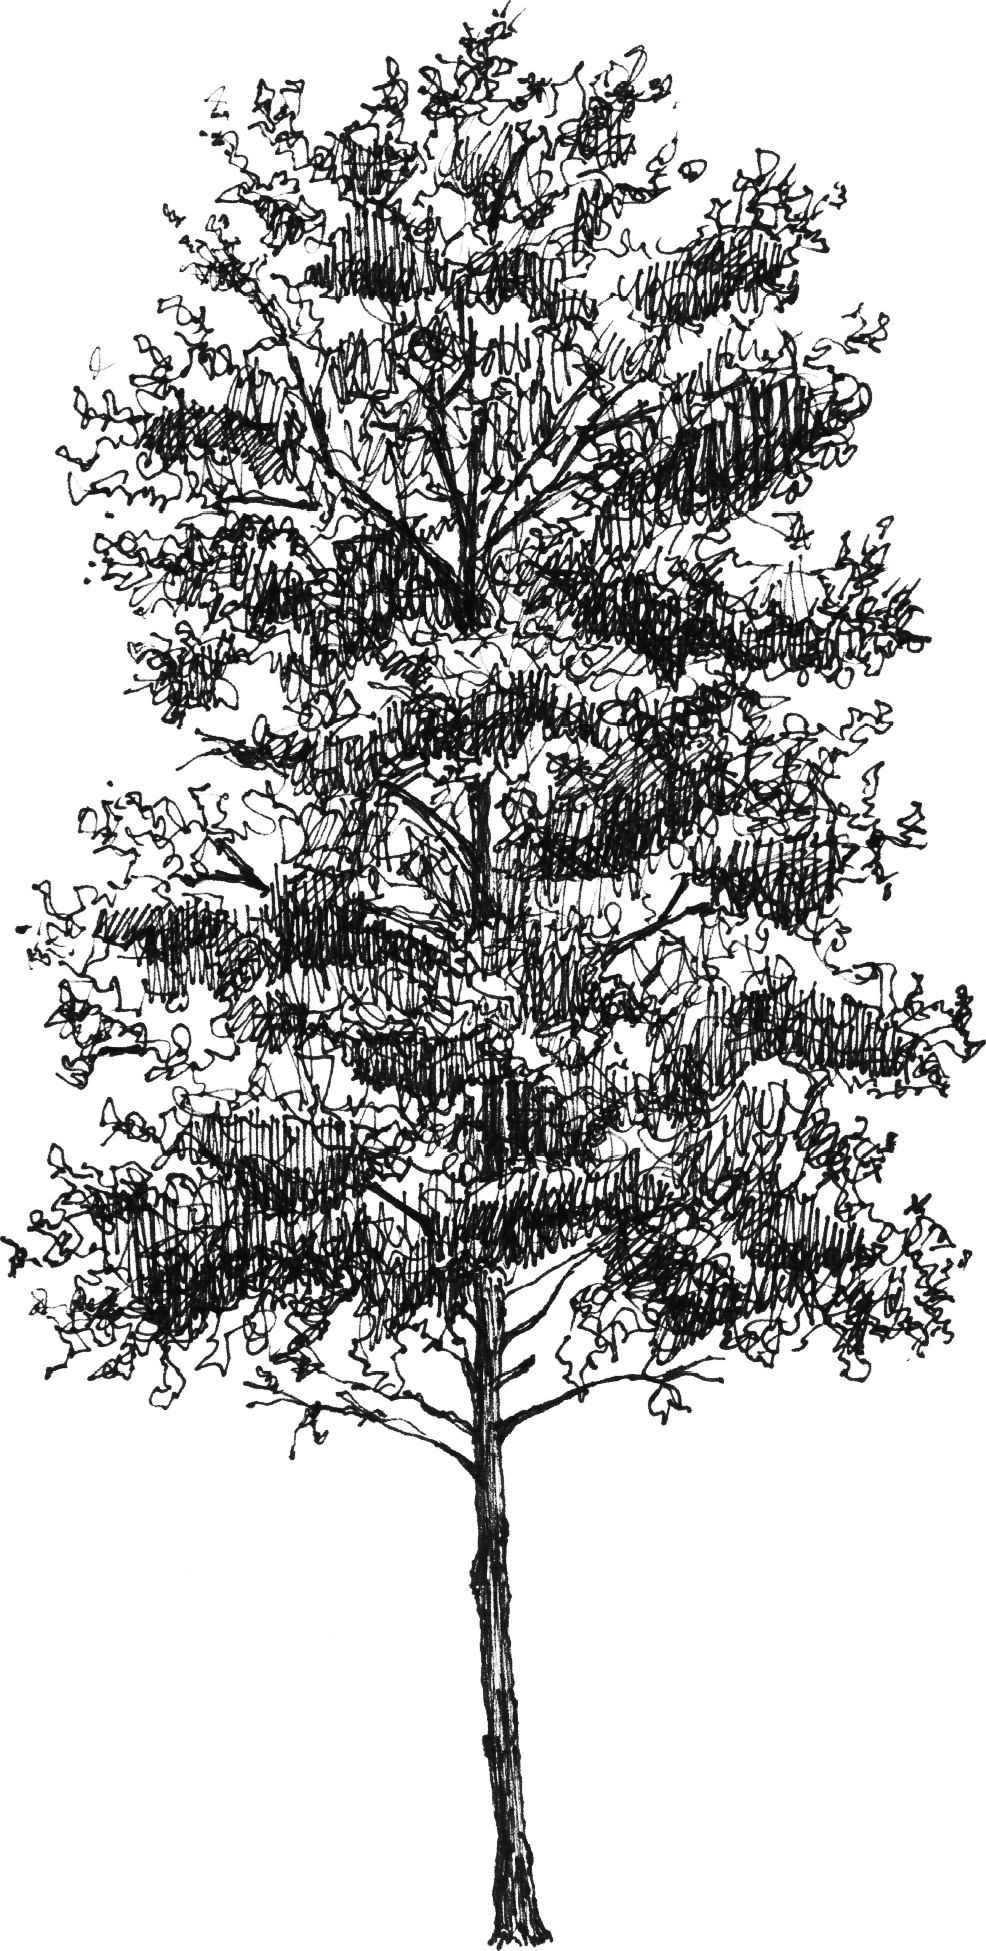 Populus tremula - Arboretum - Baltics - Drawing by Camillo Visini